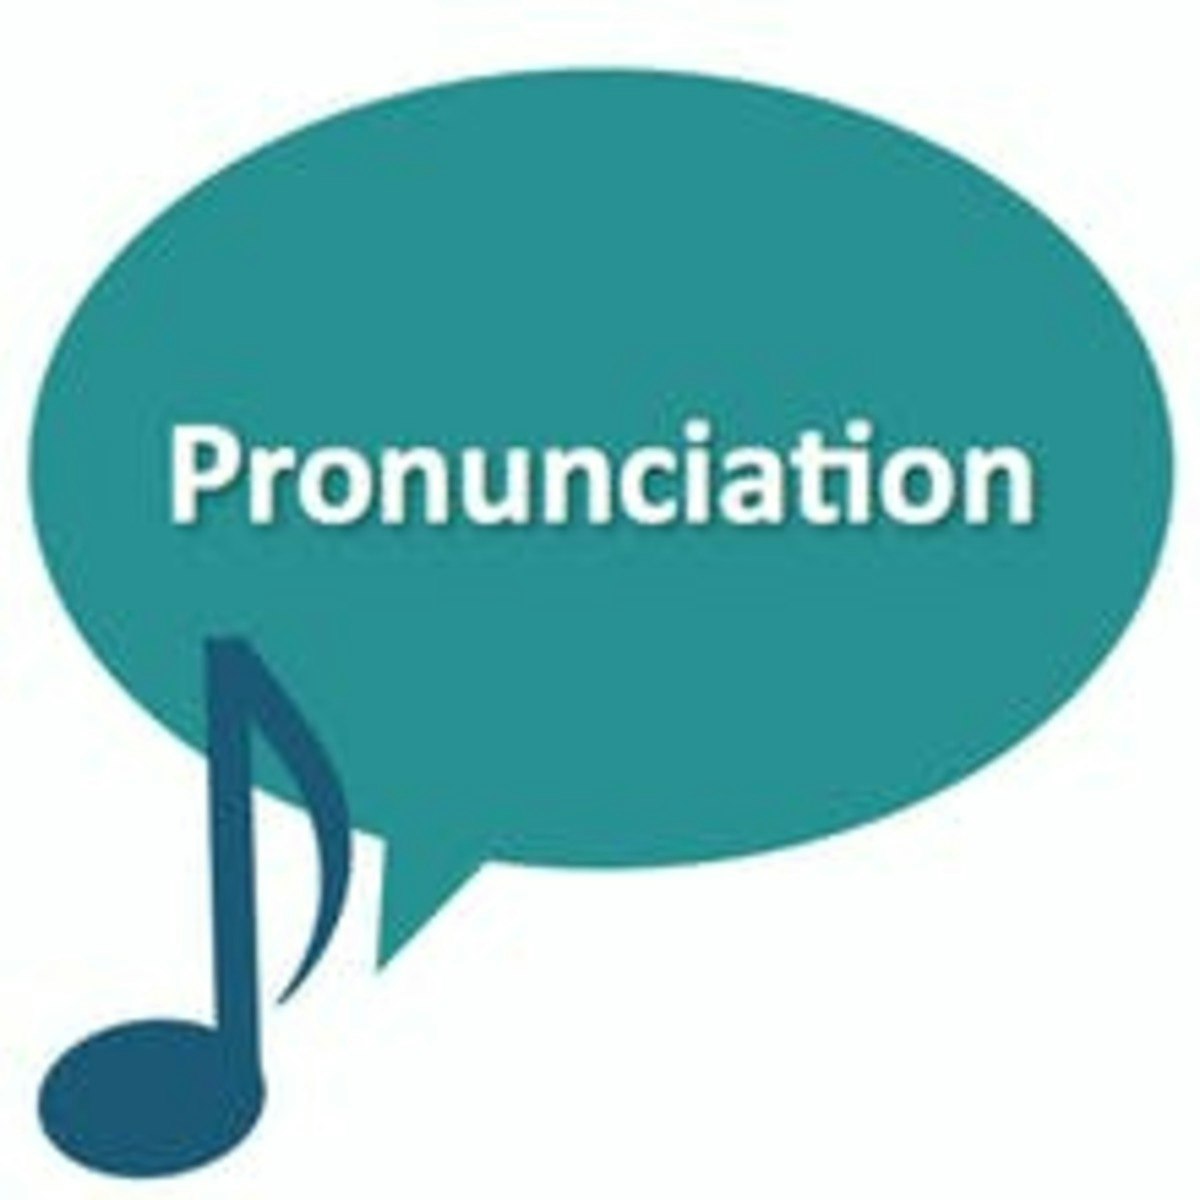 Pronunciation 